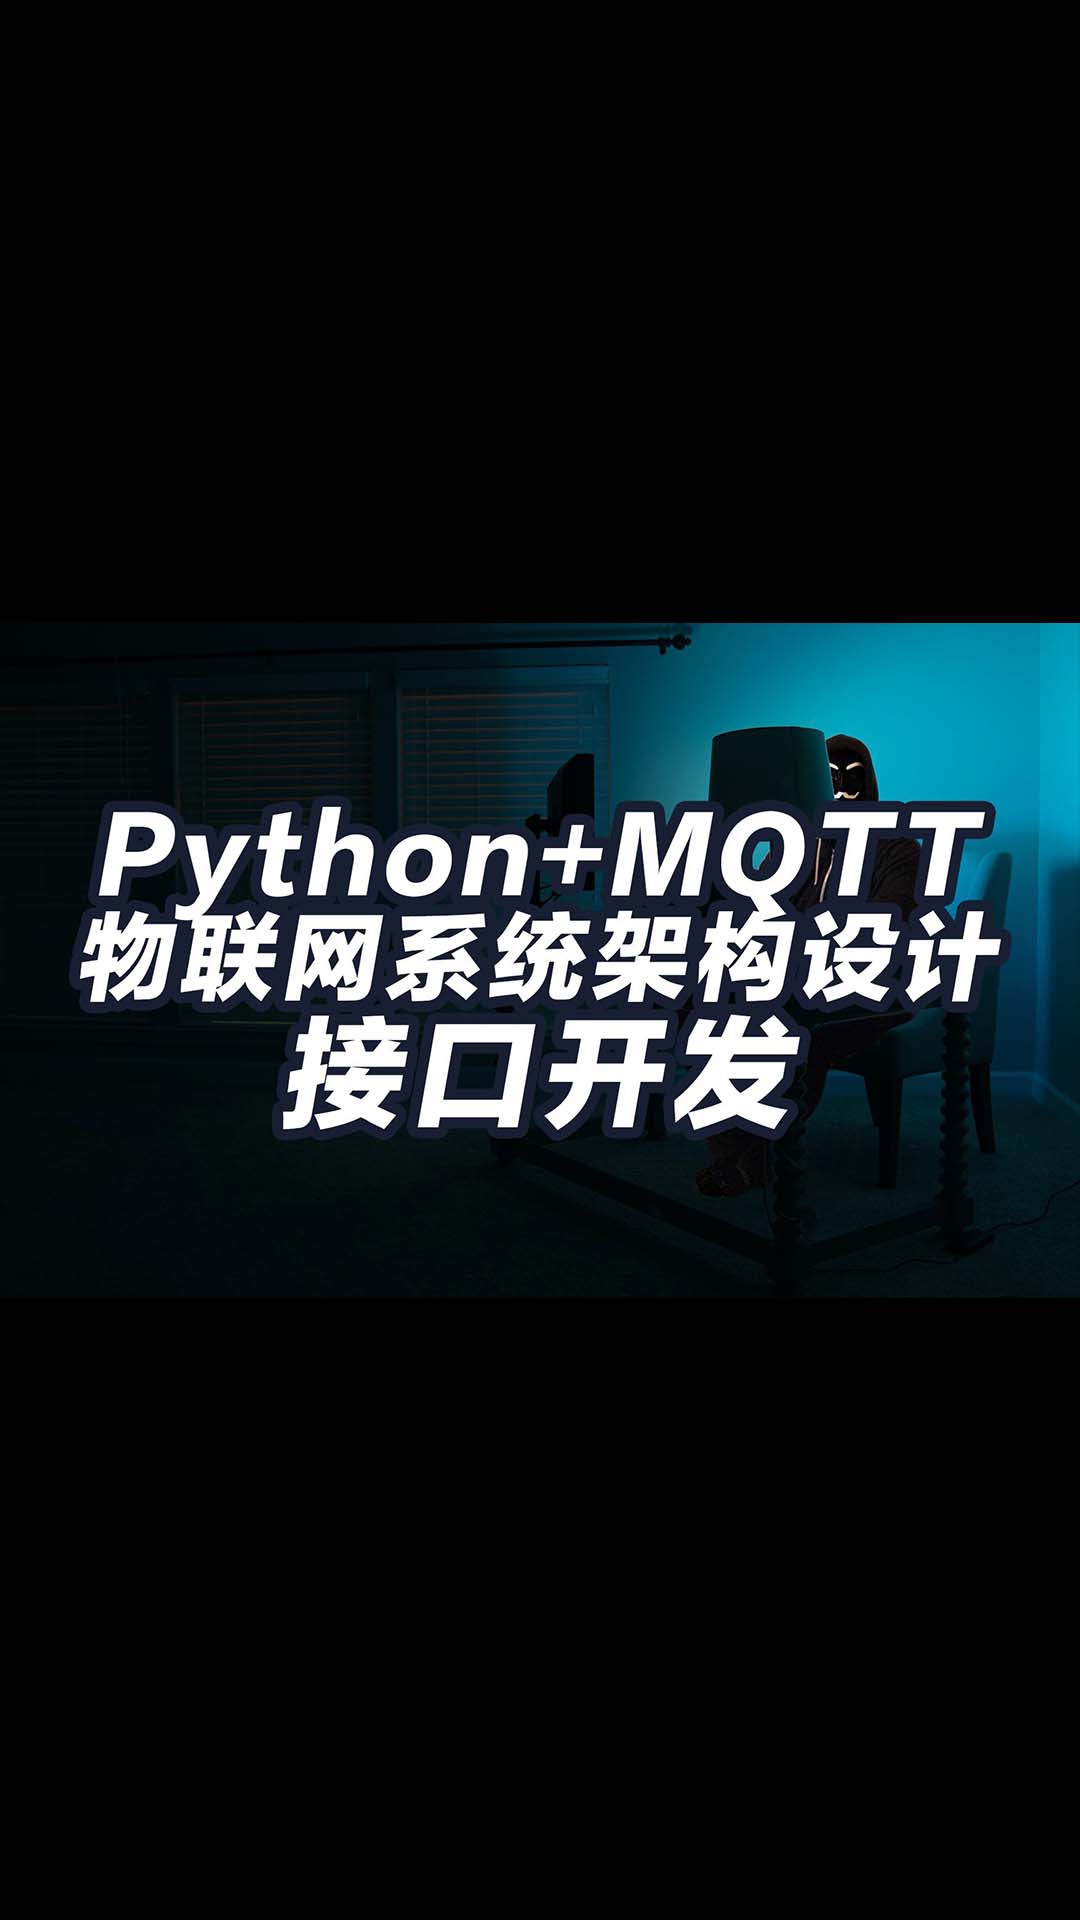 保姆教程 物联网系统结构概述 如何用python开发接口 通过mqtt控制设备